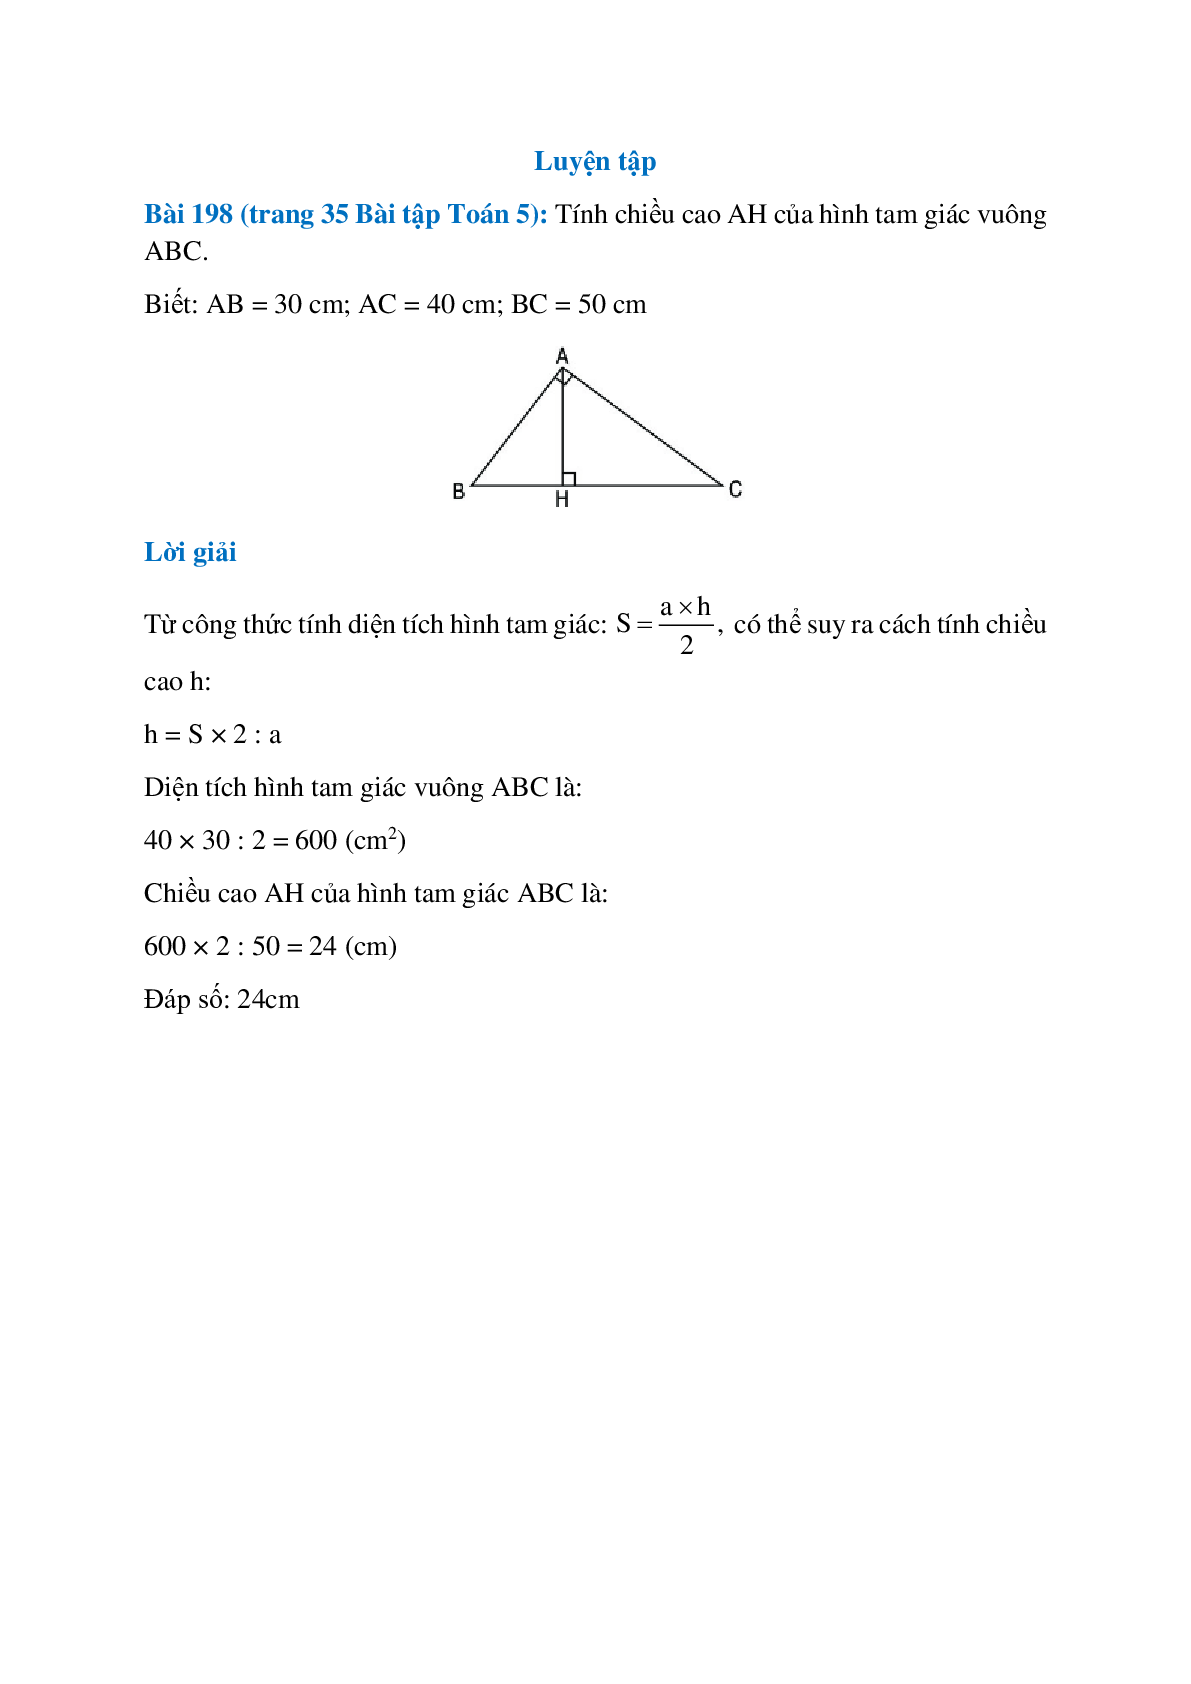 Tính chiều cao AH của hình tam giác vuông ABC (trang 1)